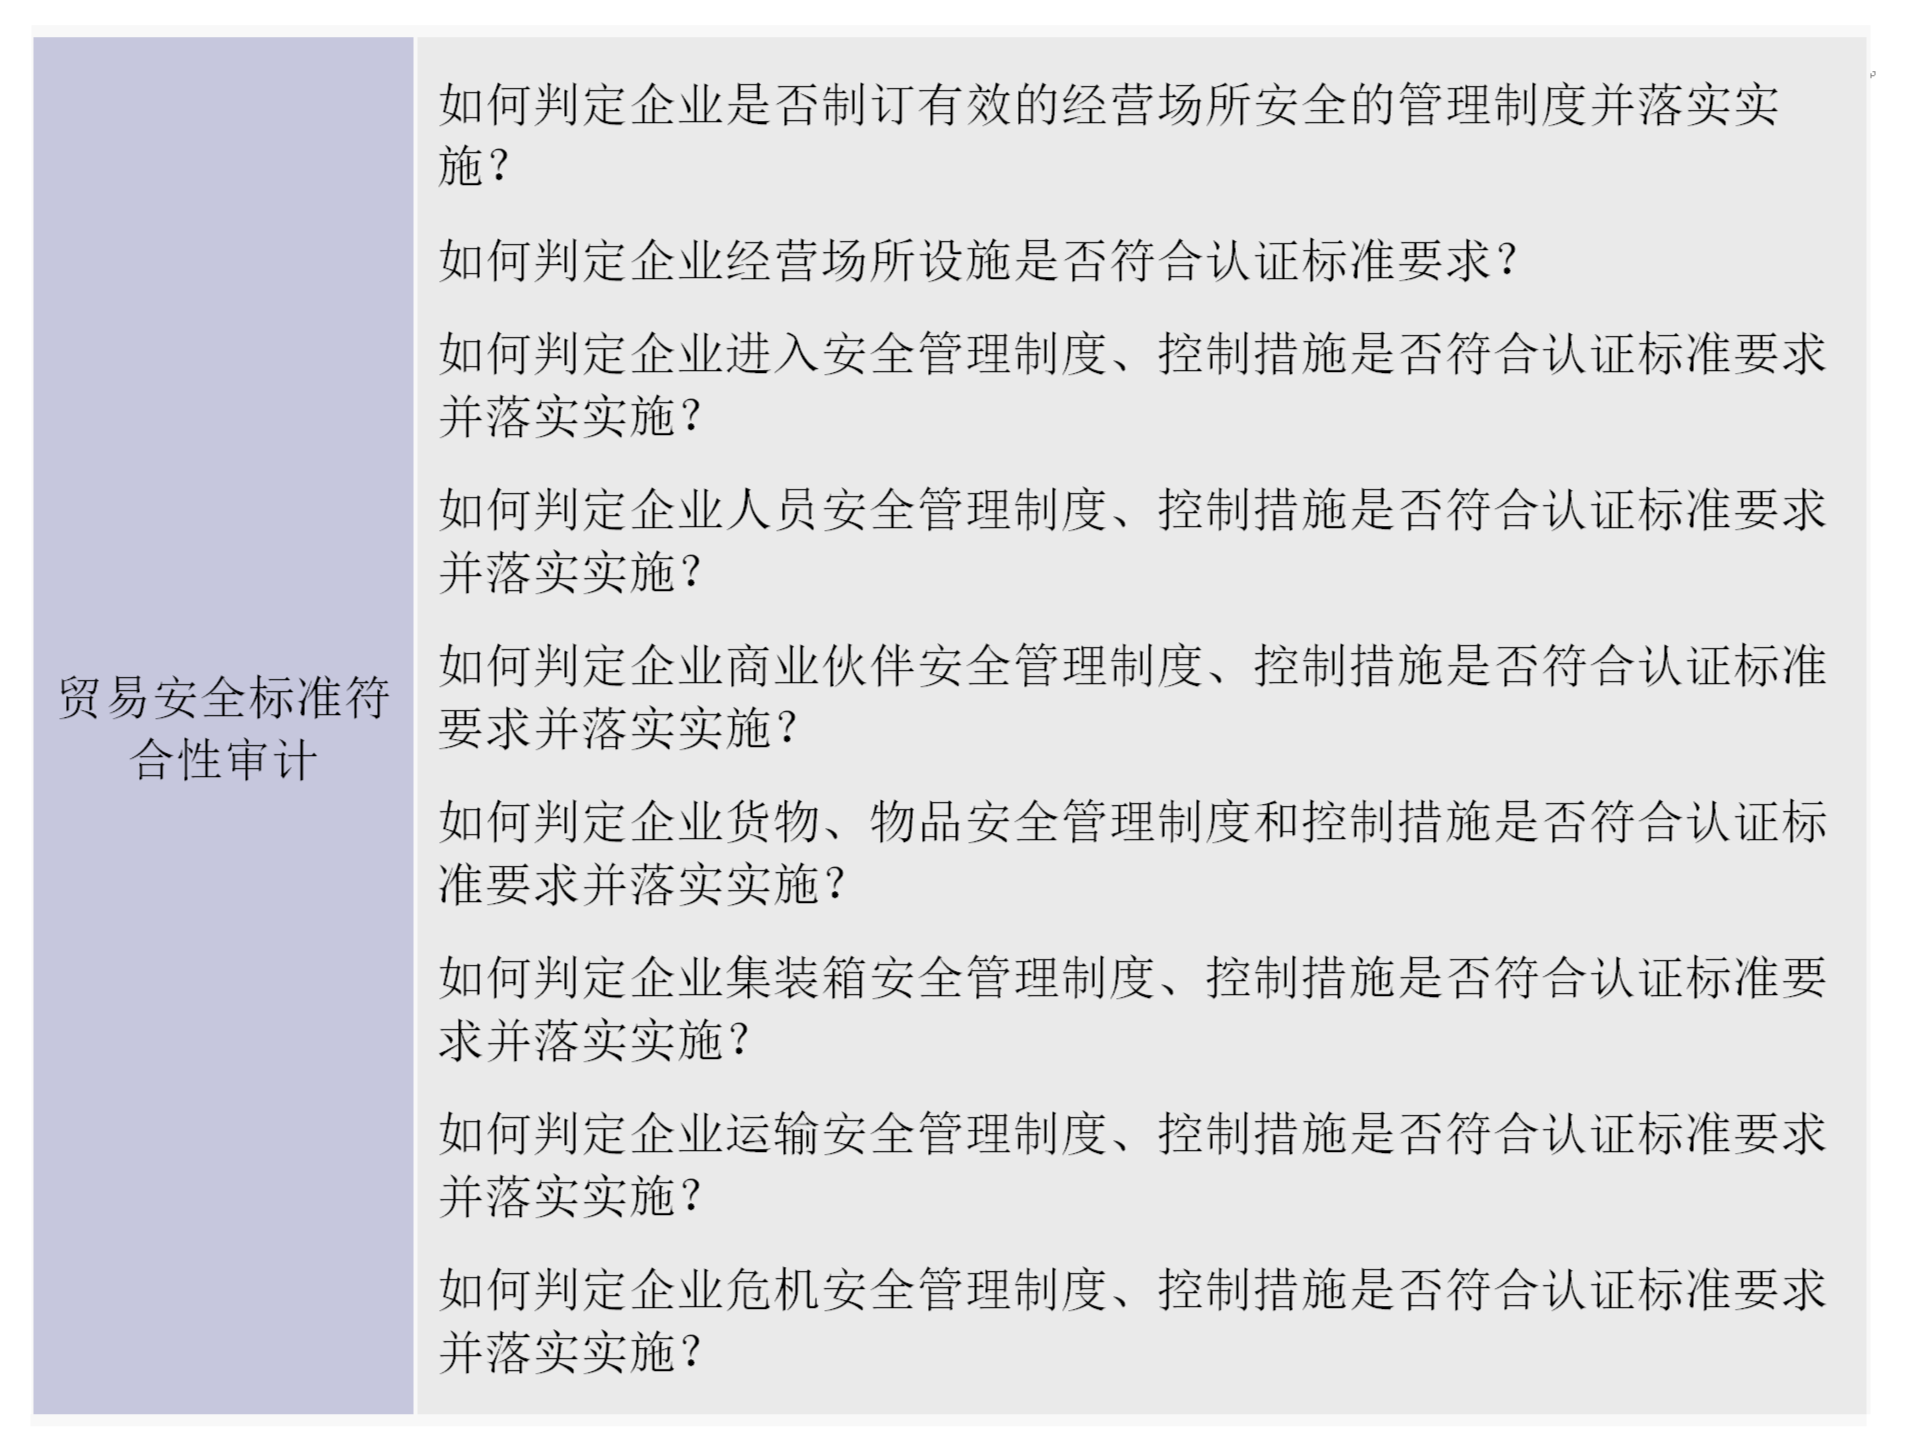 进出口活动审计实战高级（深圳、上海）研修班_05_meitu_5.png